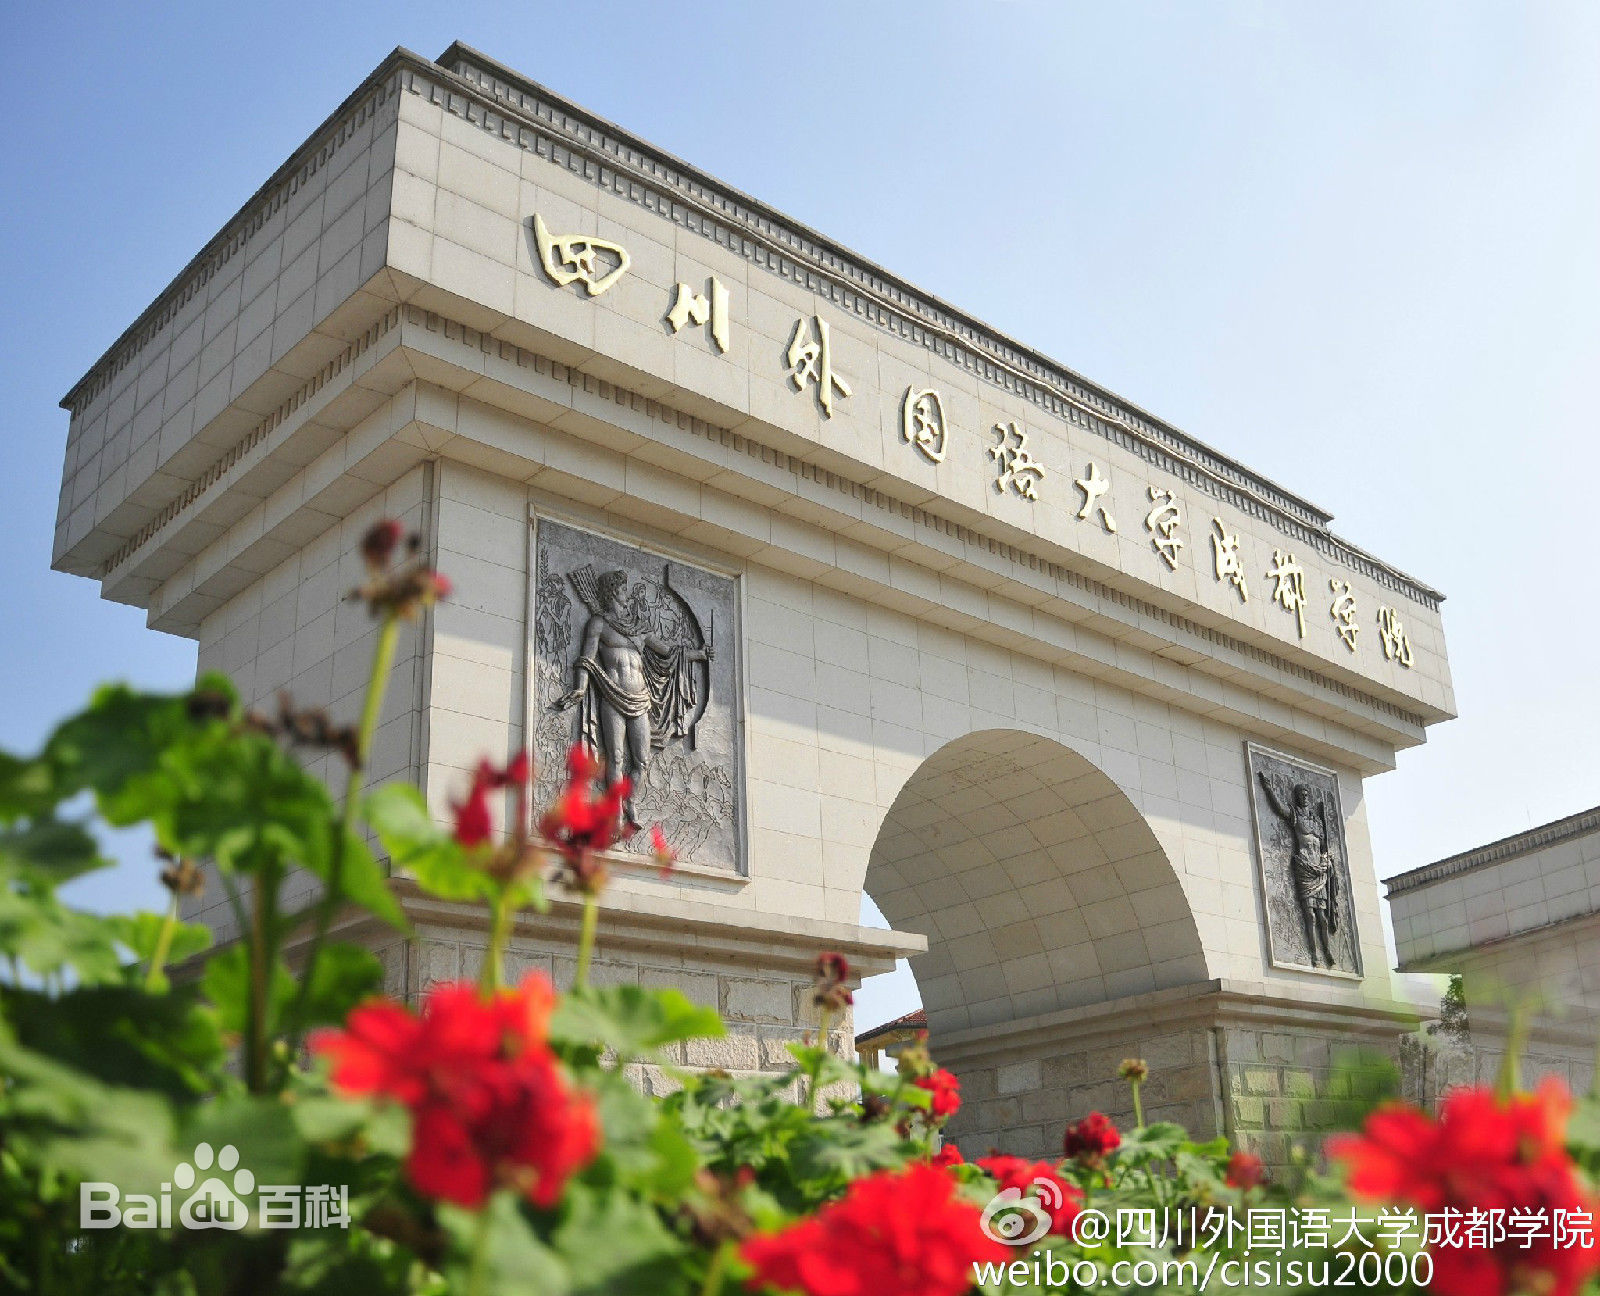 第12届“外教社杯”全国高校外语教学大赛（外语类专业组） 北京赛区比赛在北师大举行-北京师范大学新闻网